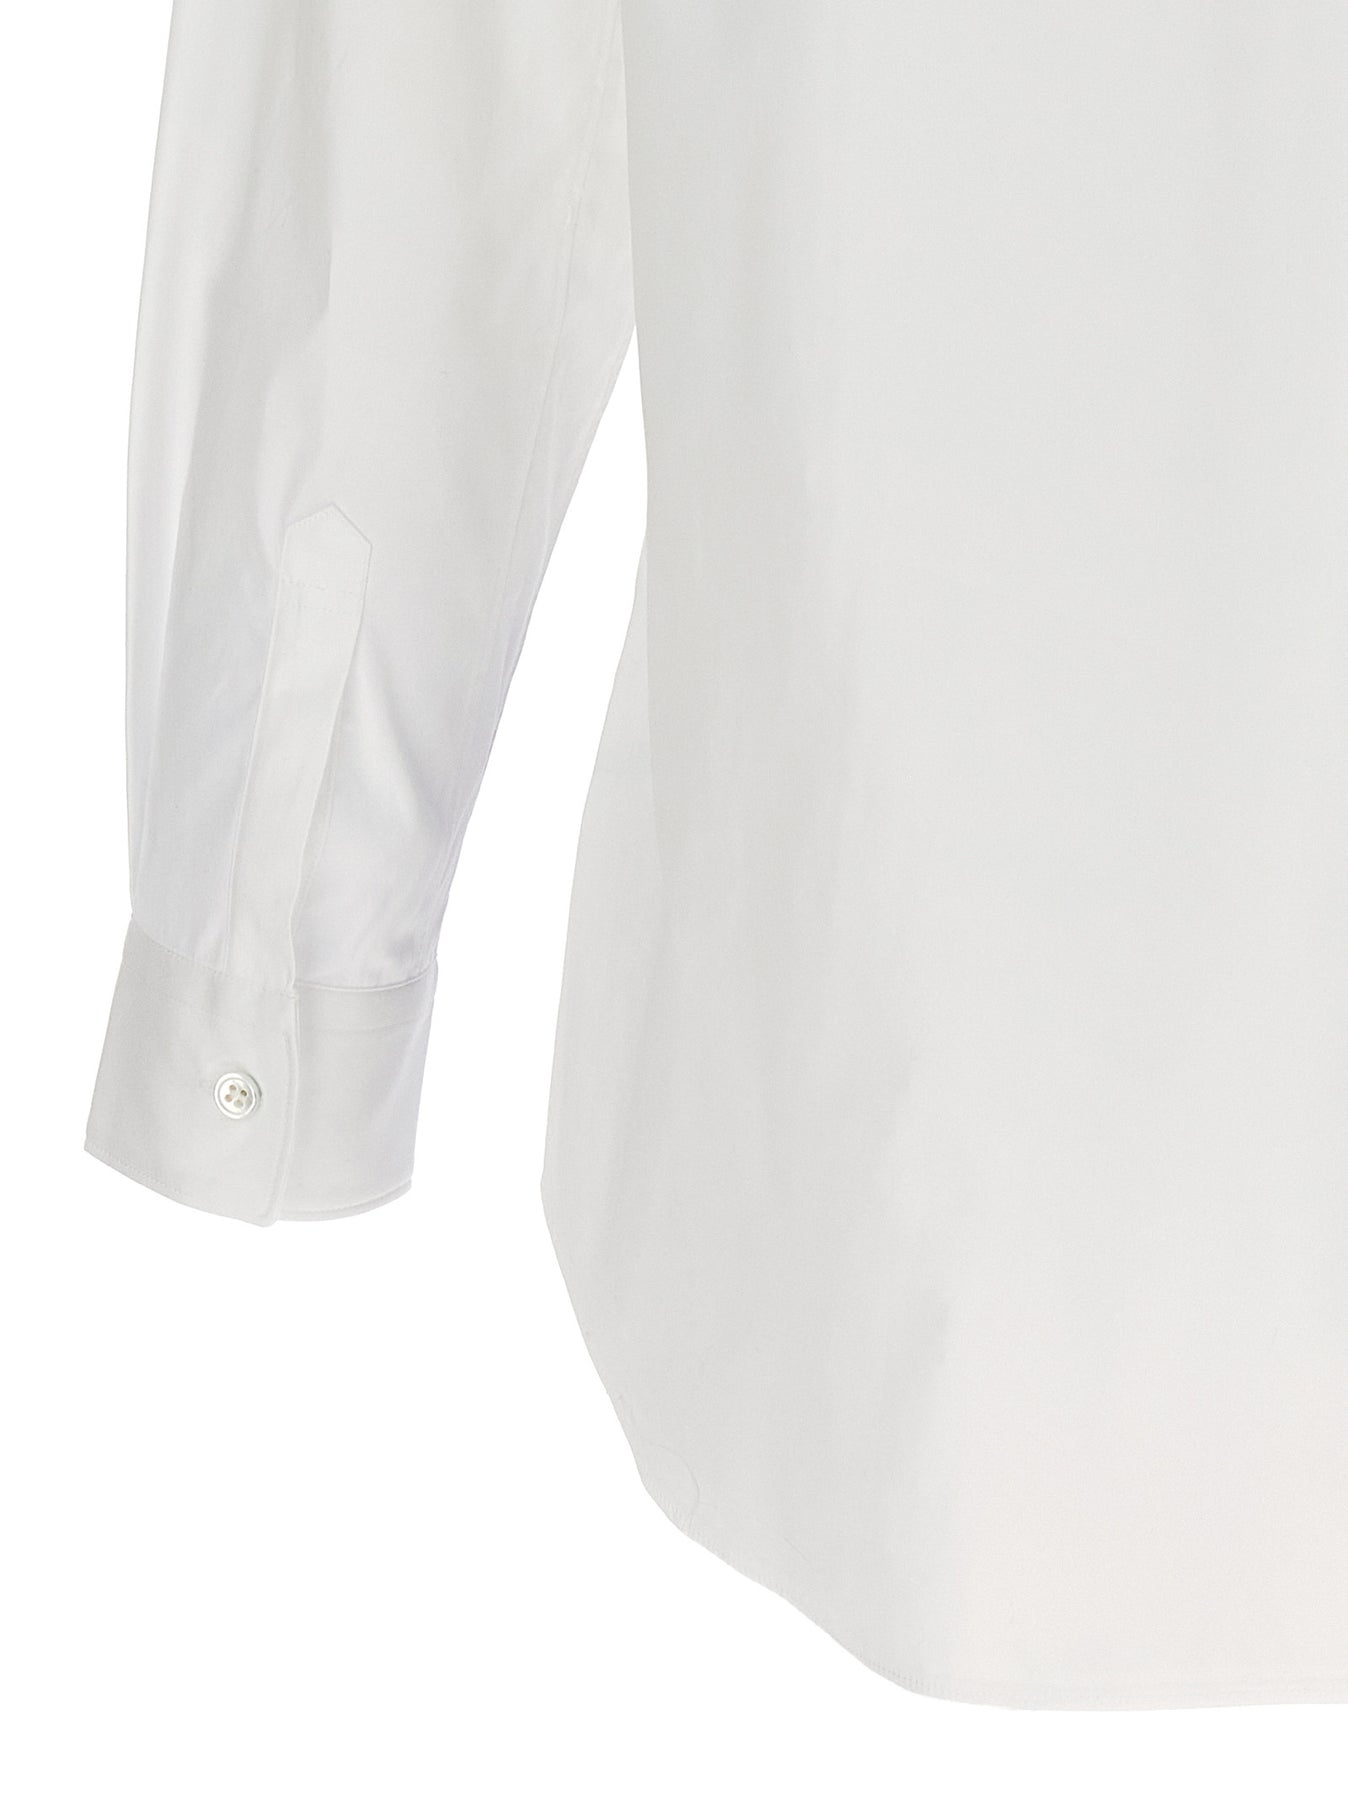 Patterned Square Shirt Shirt, Blouse White - 4